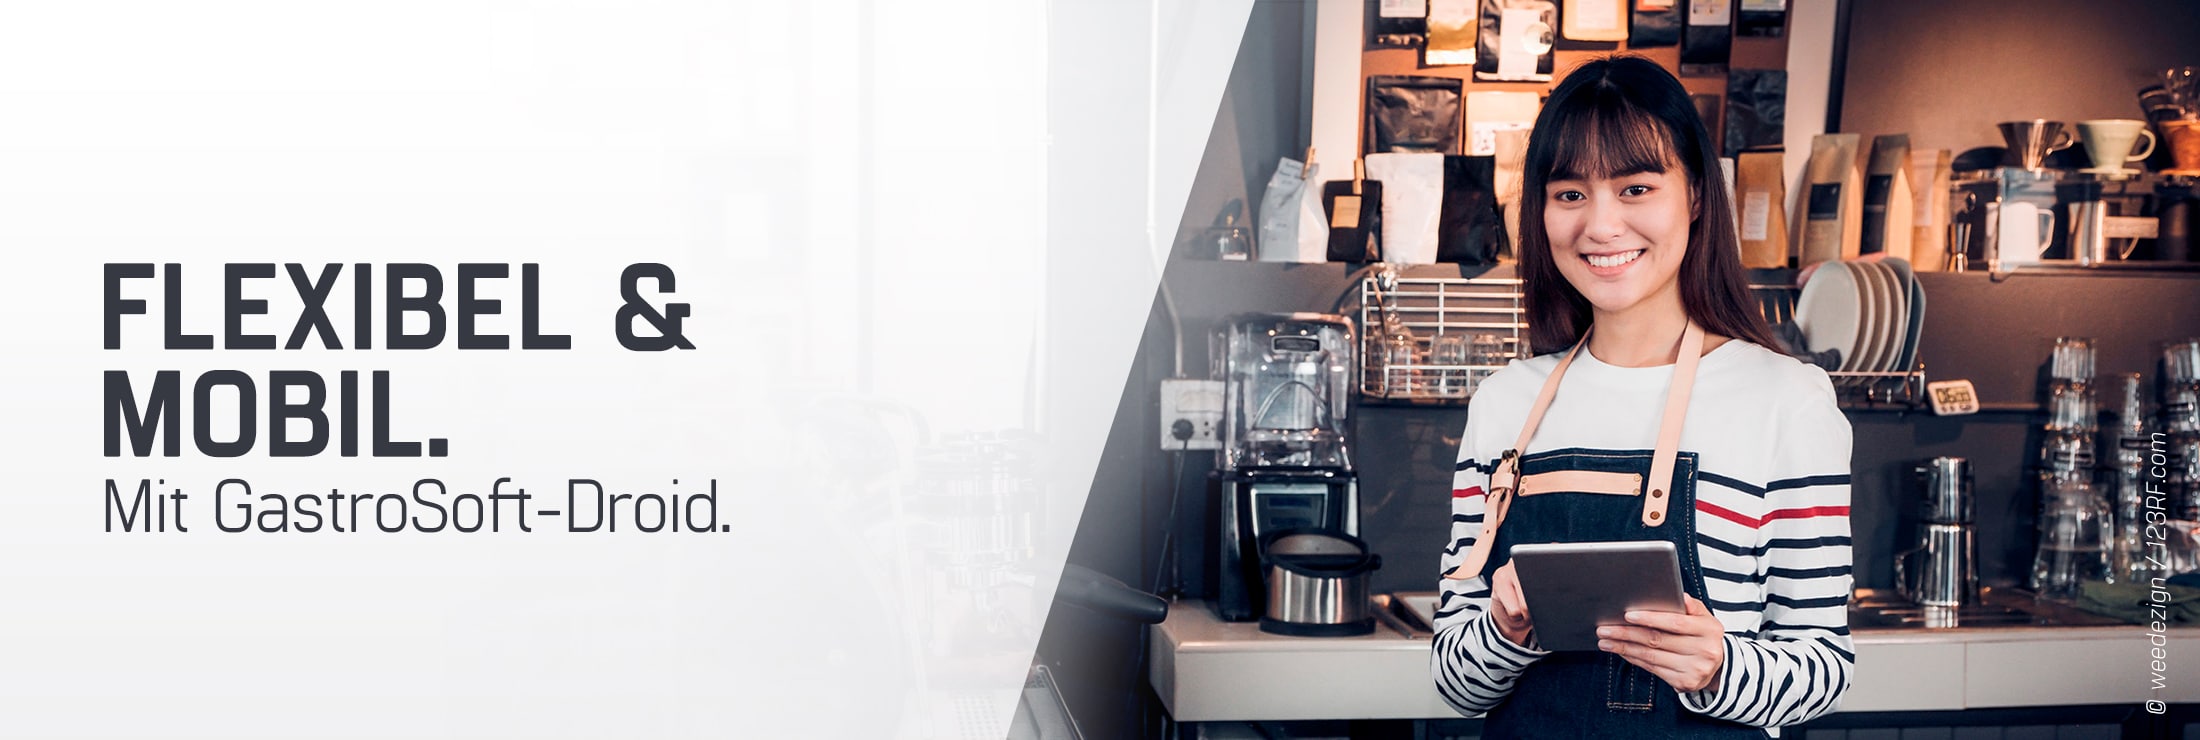 braunhaarige Frau im weiß-gestreiften pullover in einem Cafe als Kellnerin oder Barista stehend für Droid mobile Bestelllösung